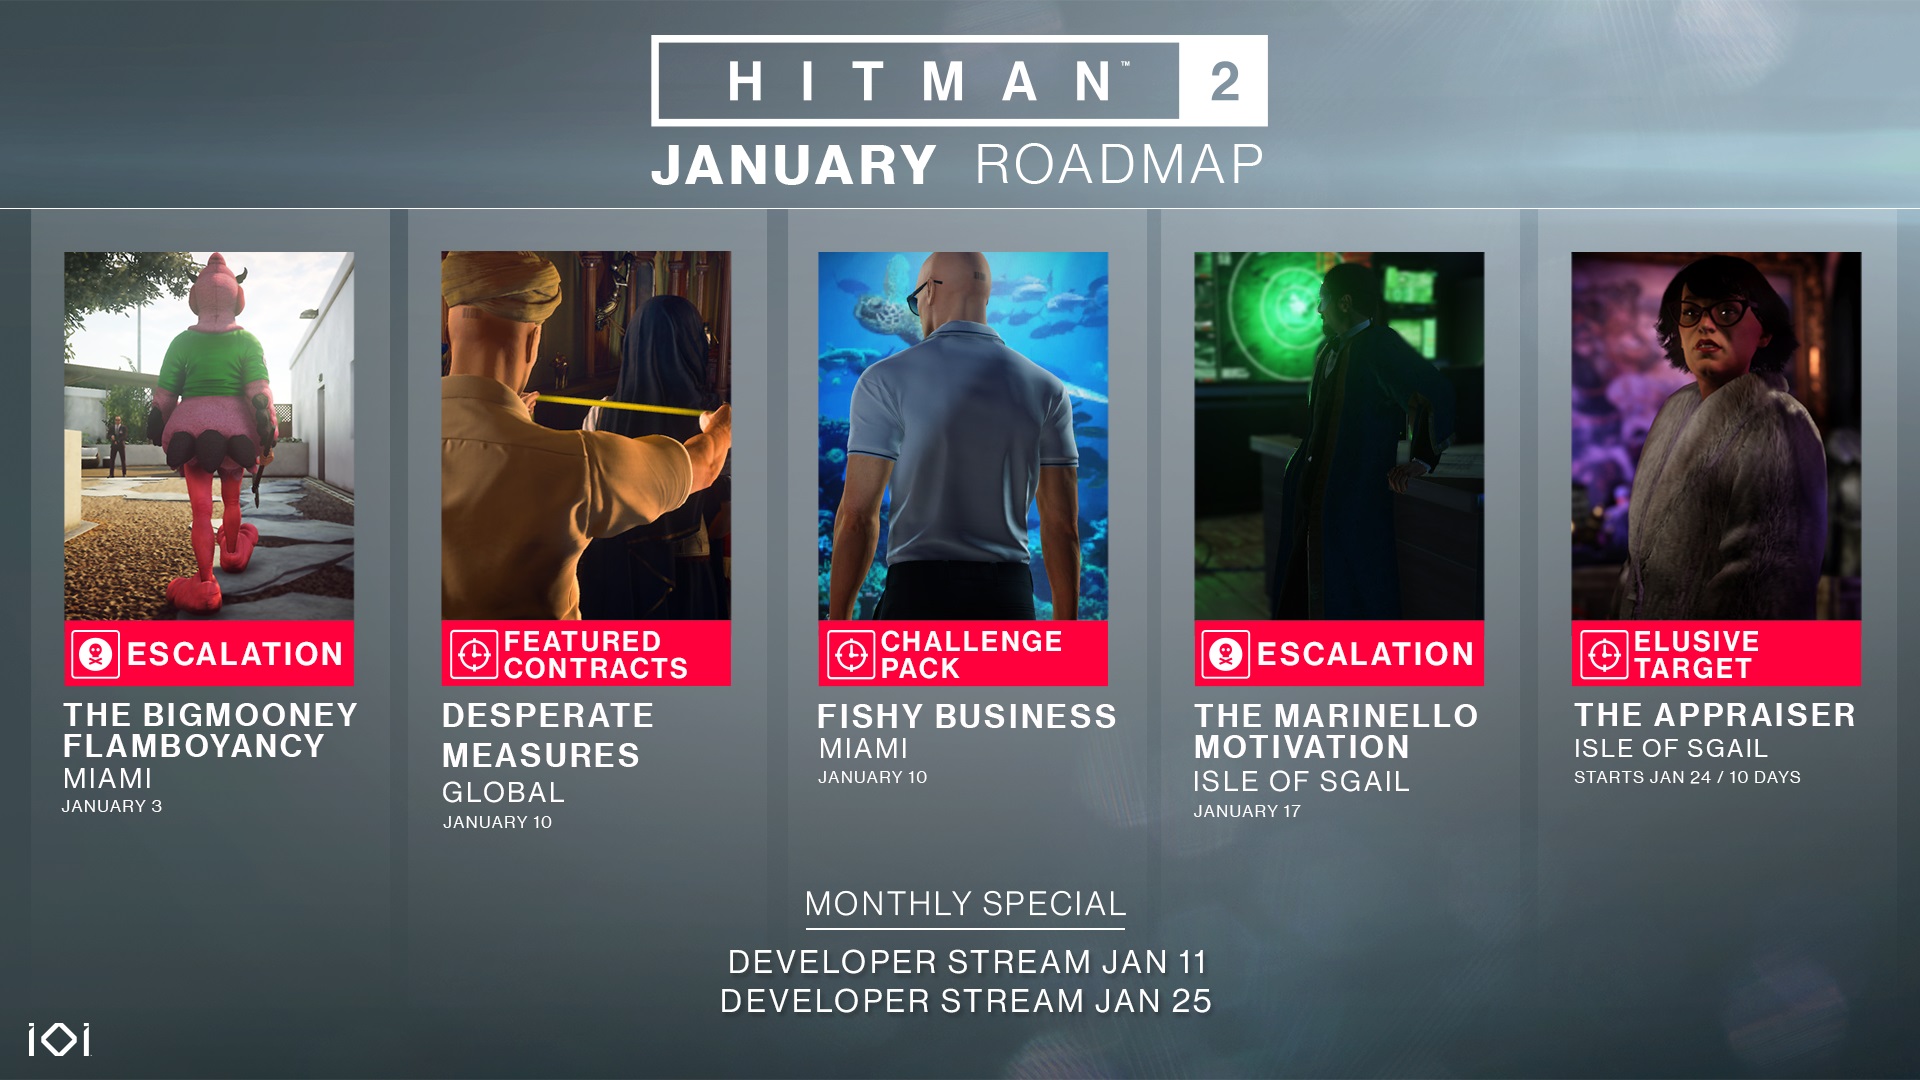 Hitman 2 January roadmap.